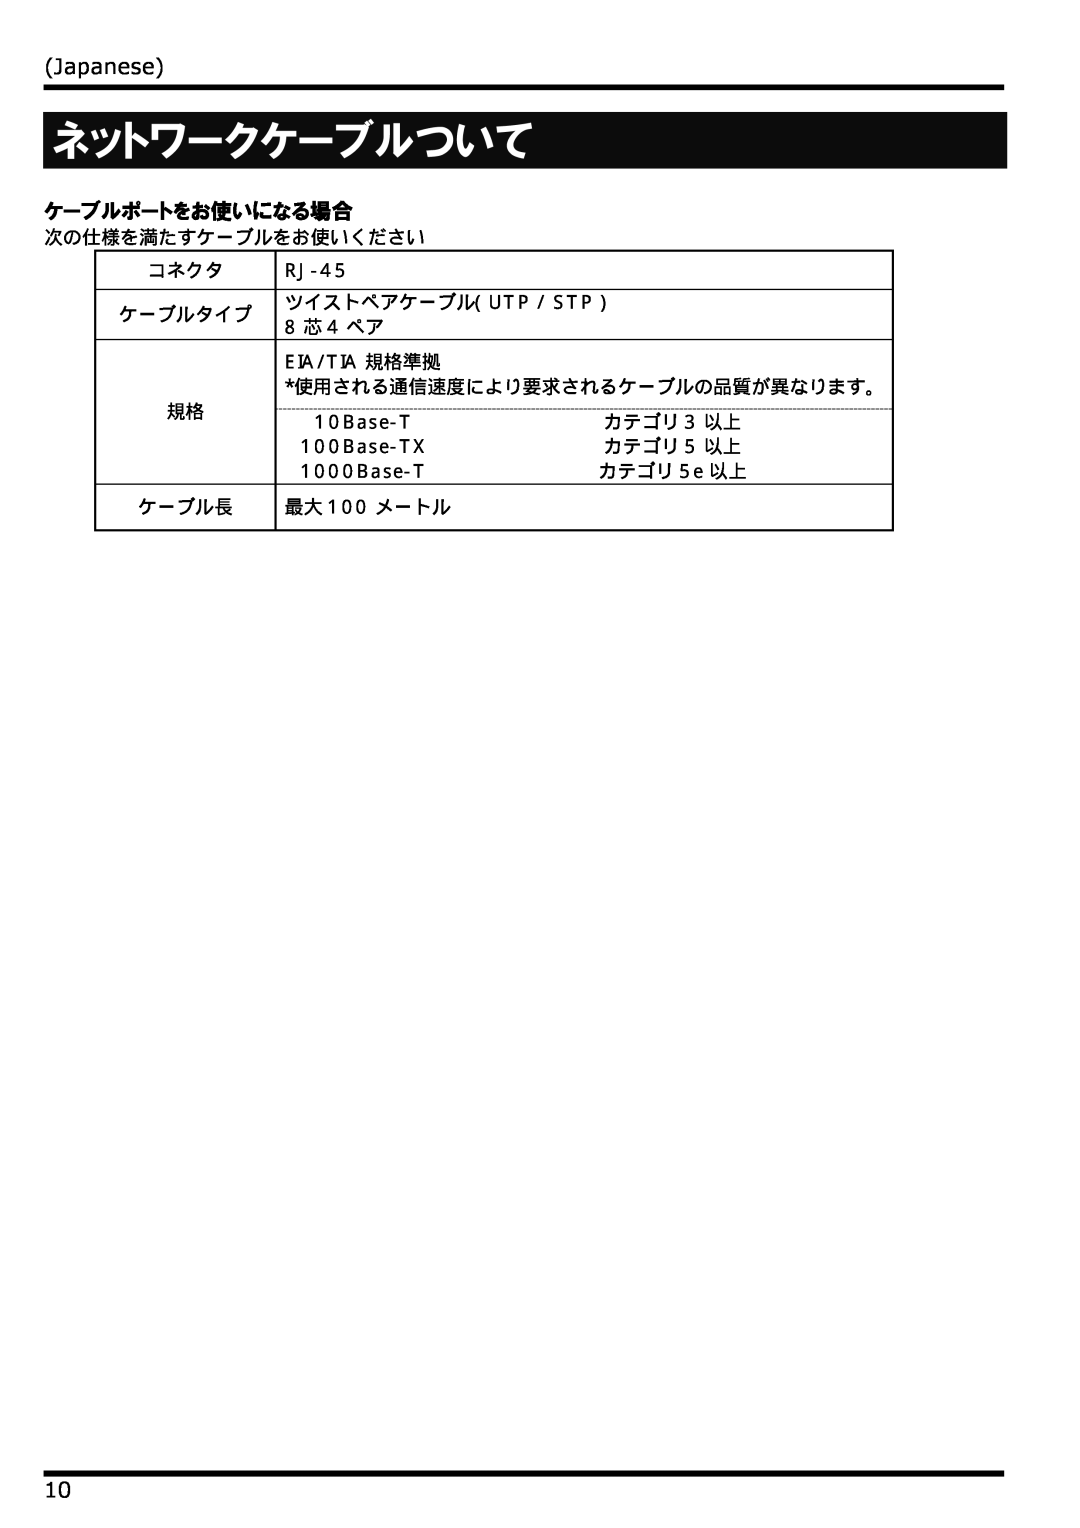 NEC N8406-022 manual ネットワークケーブルついて, Japanese, ケーブルポートをお使いになる場合 